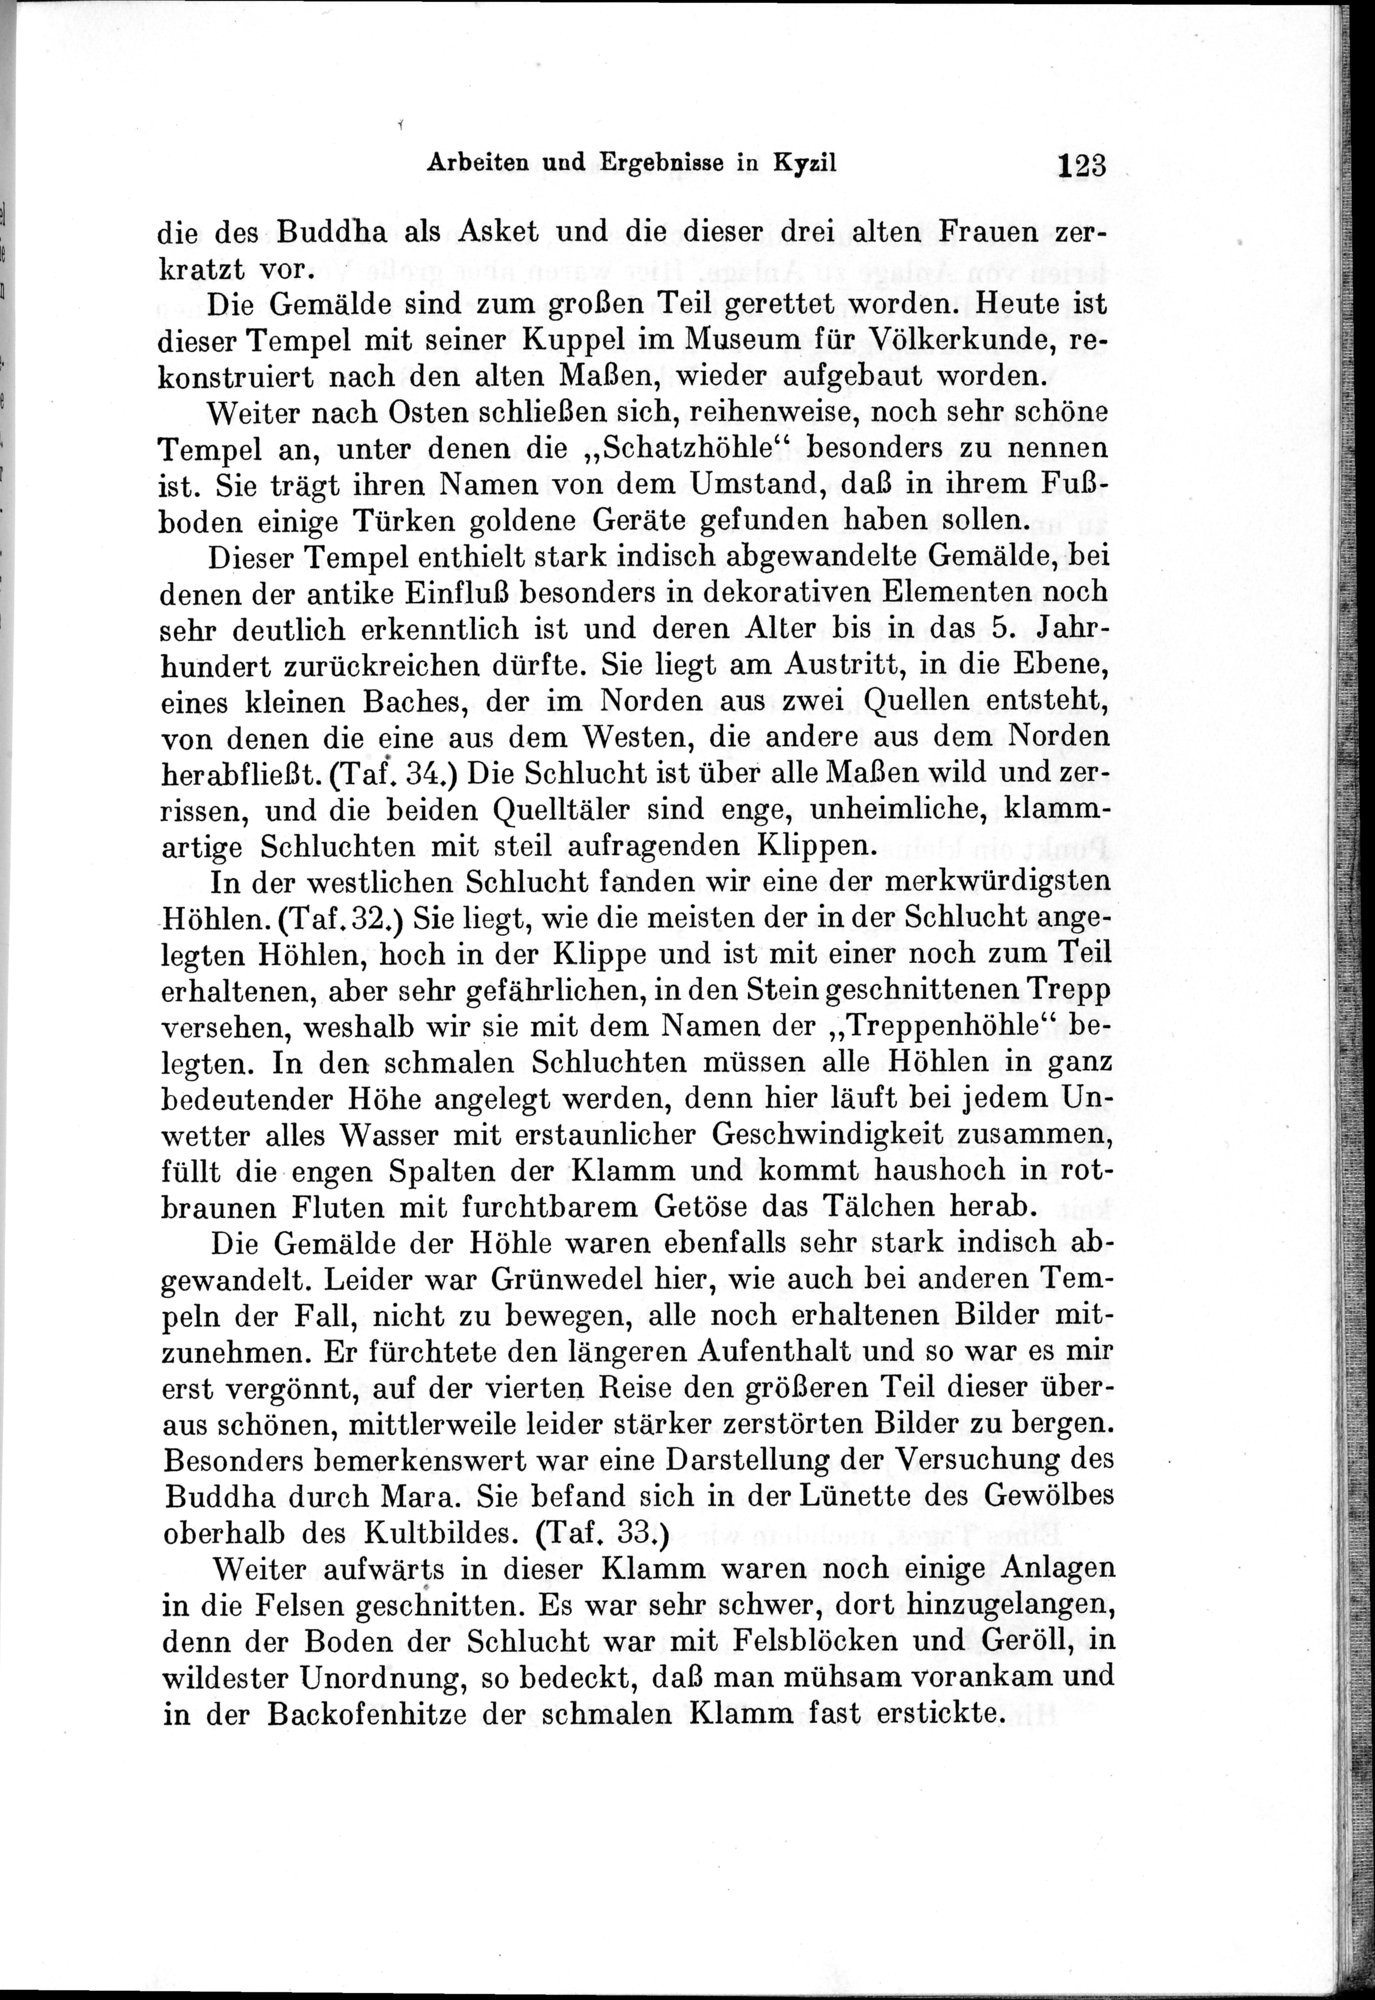 Auf Hellas Spuren in Ostturkistan : vol.1 / Page 179 (Grayscale High Resolution Image)